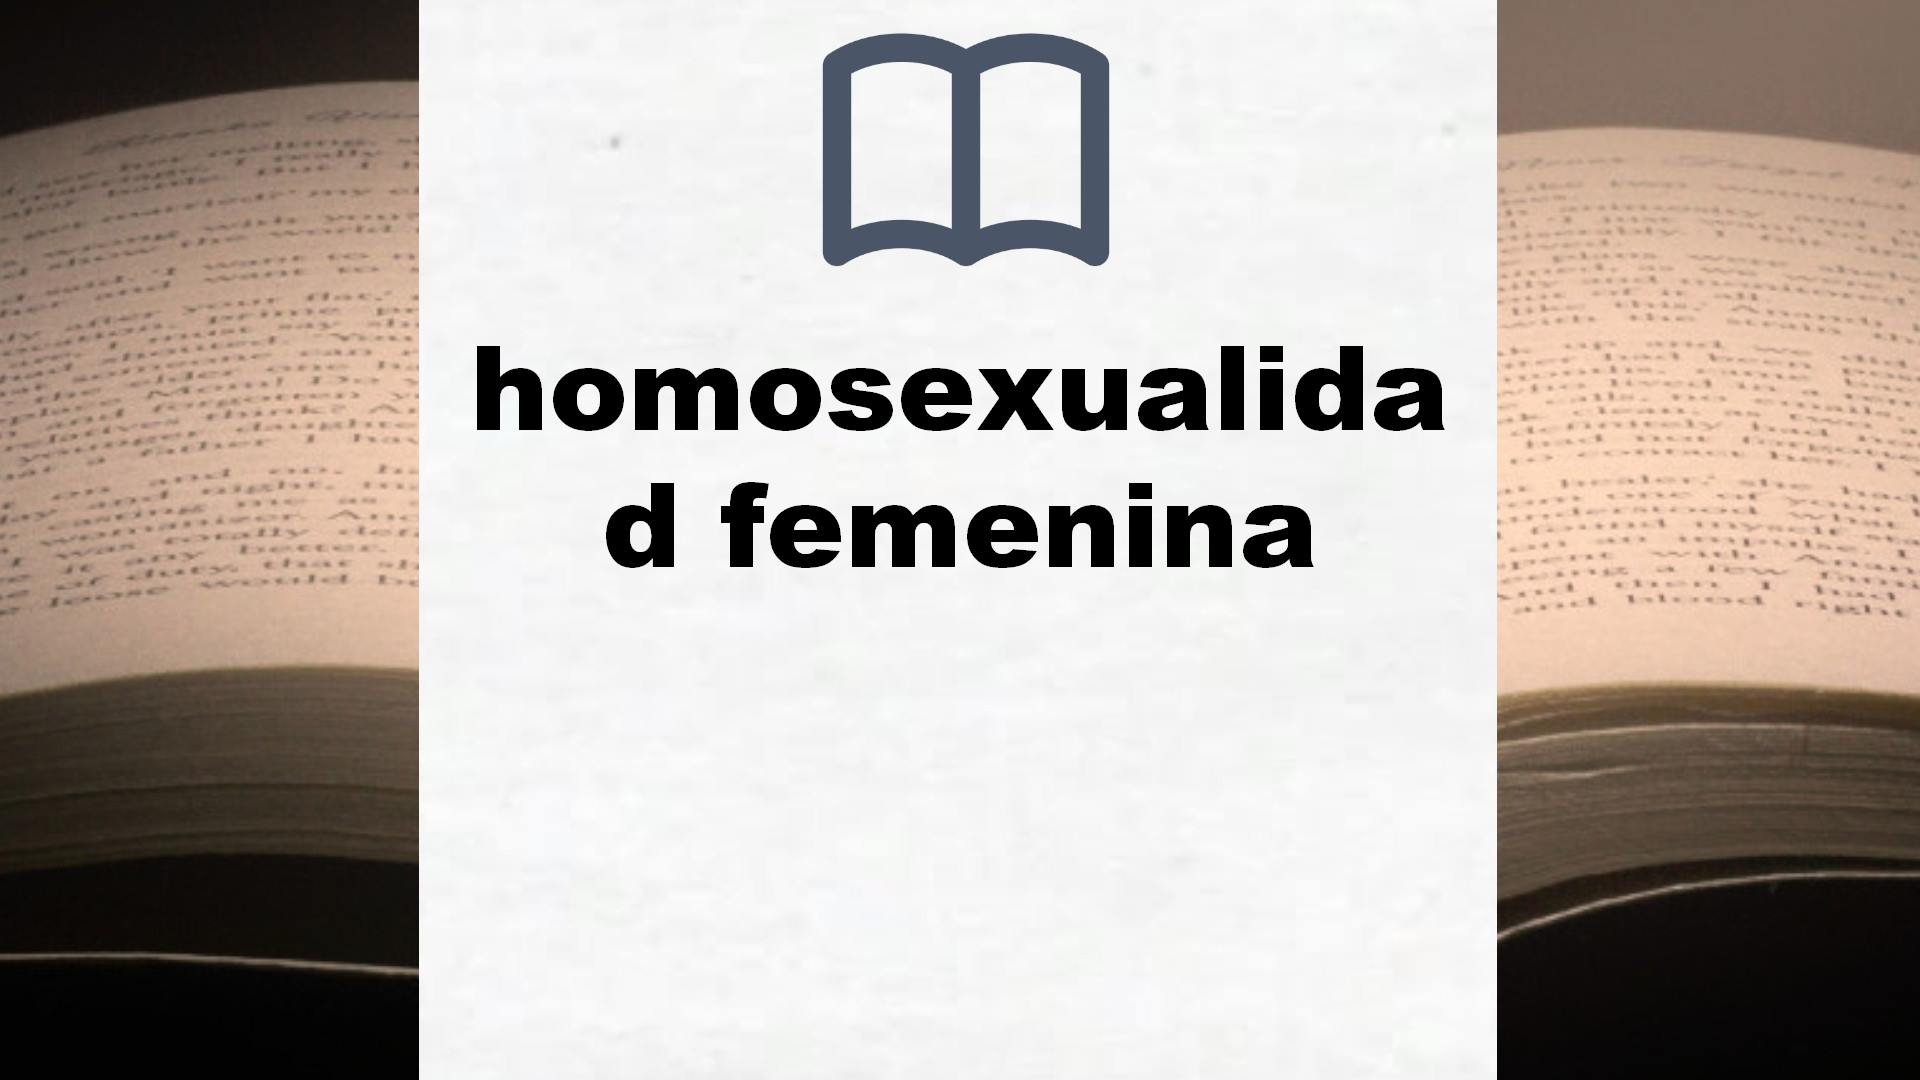 Libros sobre homosexualidad femenina